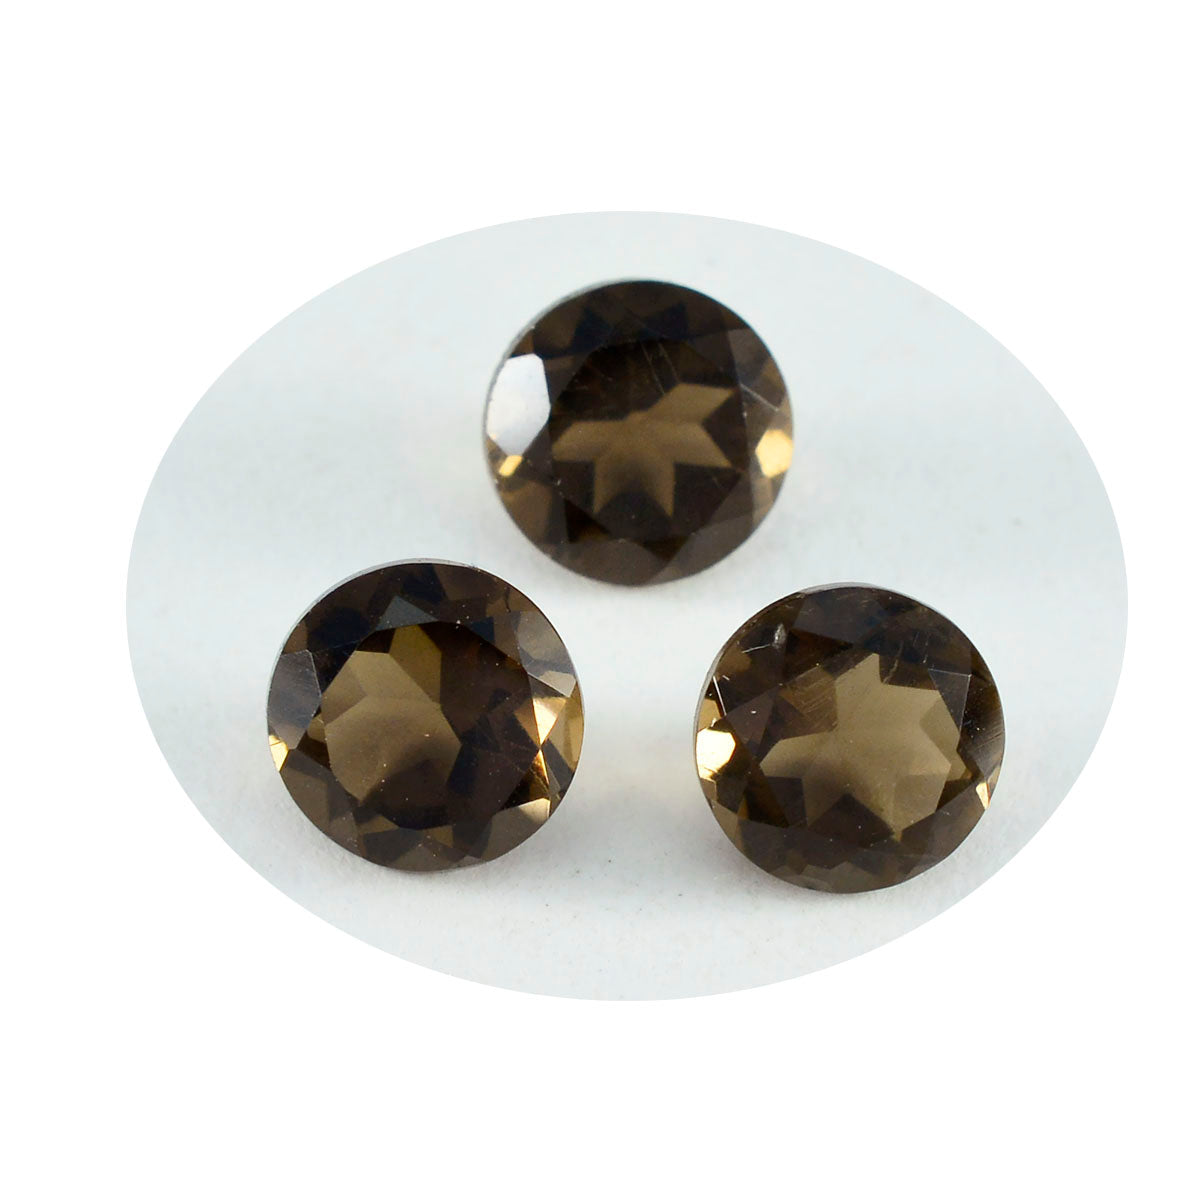 Riyogems 1 pièce de quartz fumé marron véritable à facettes 10x10mm forme ronde pierre précieuse de belle qualité